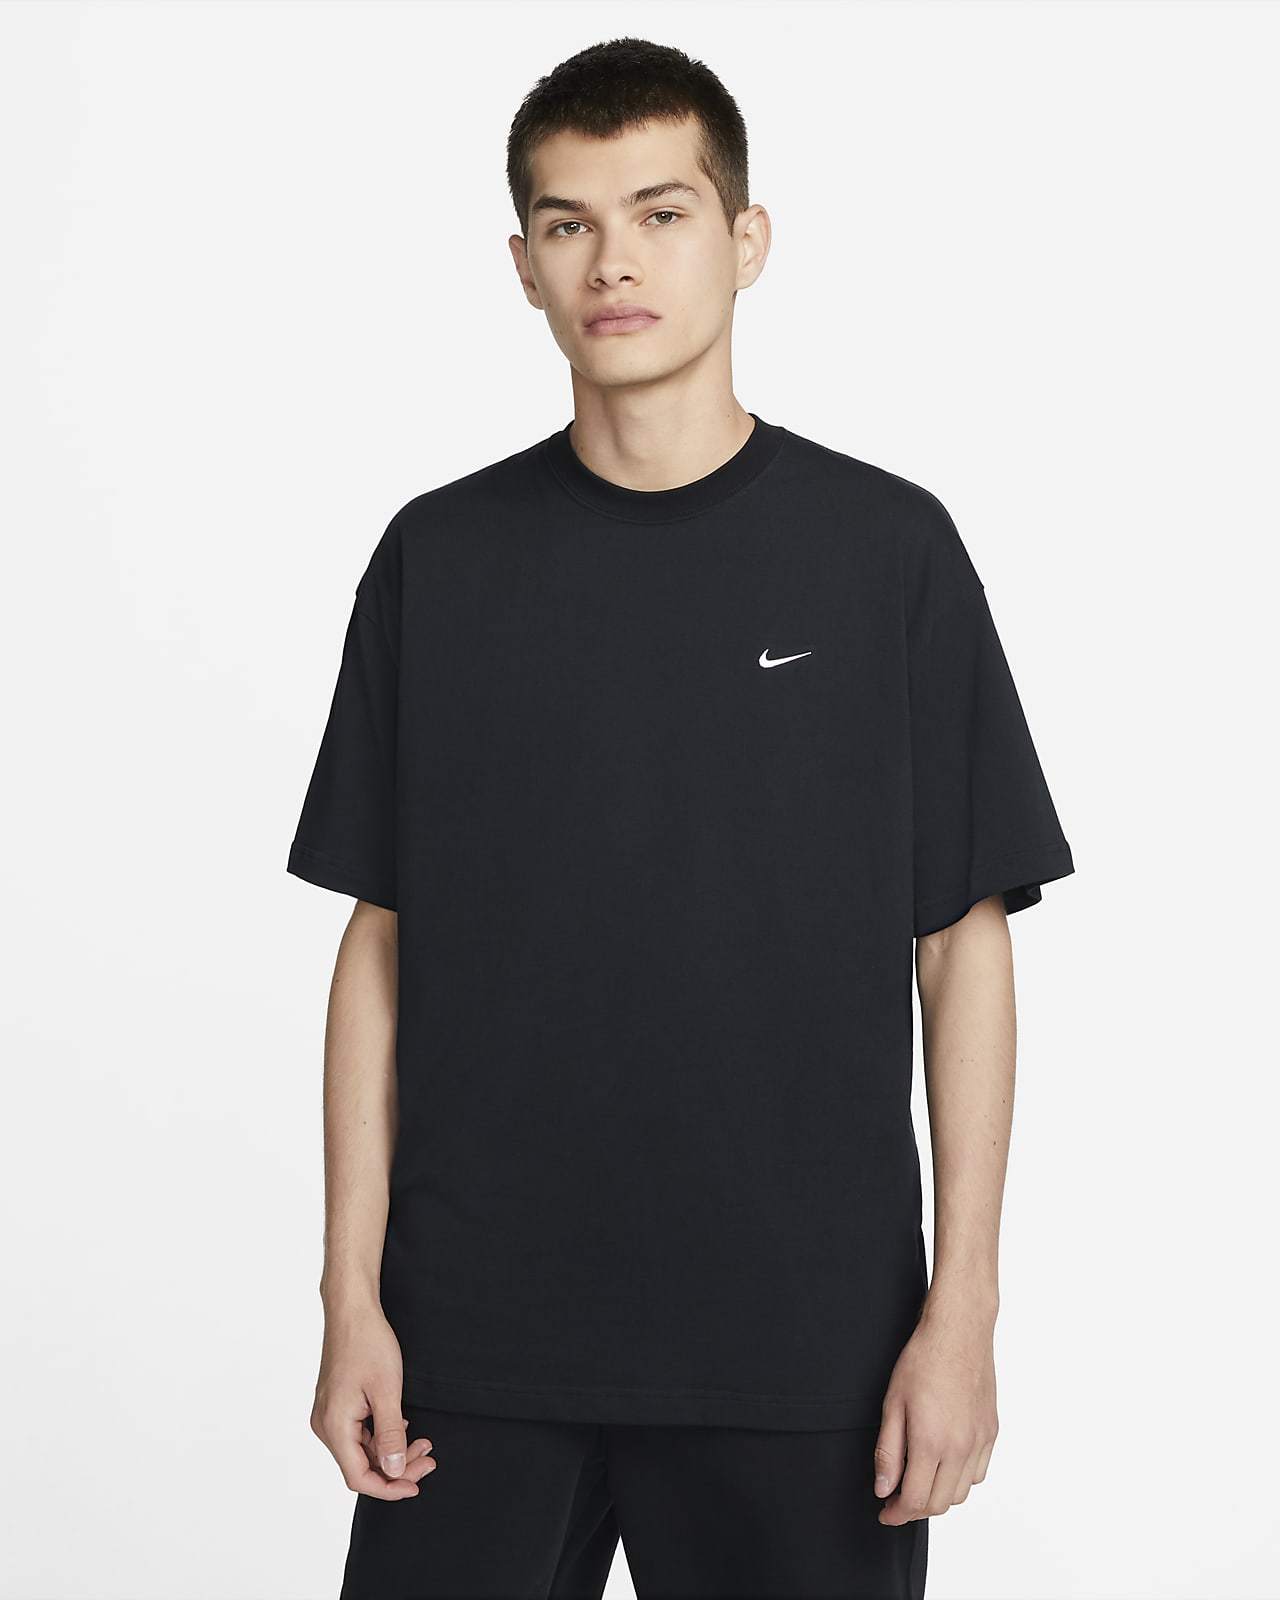 NikeLab Men's T-Shirt. Nike LU